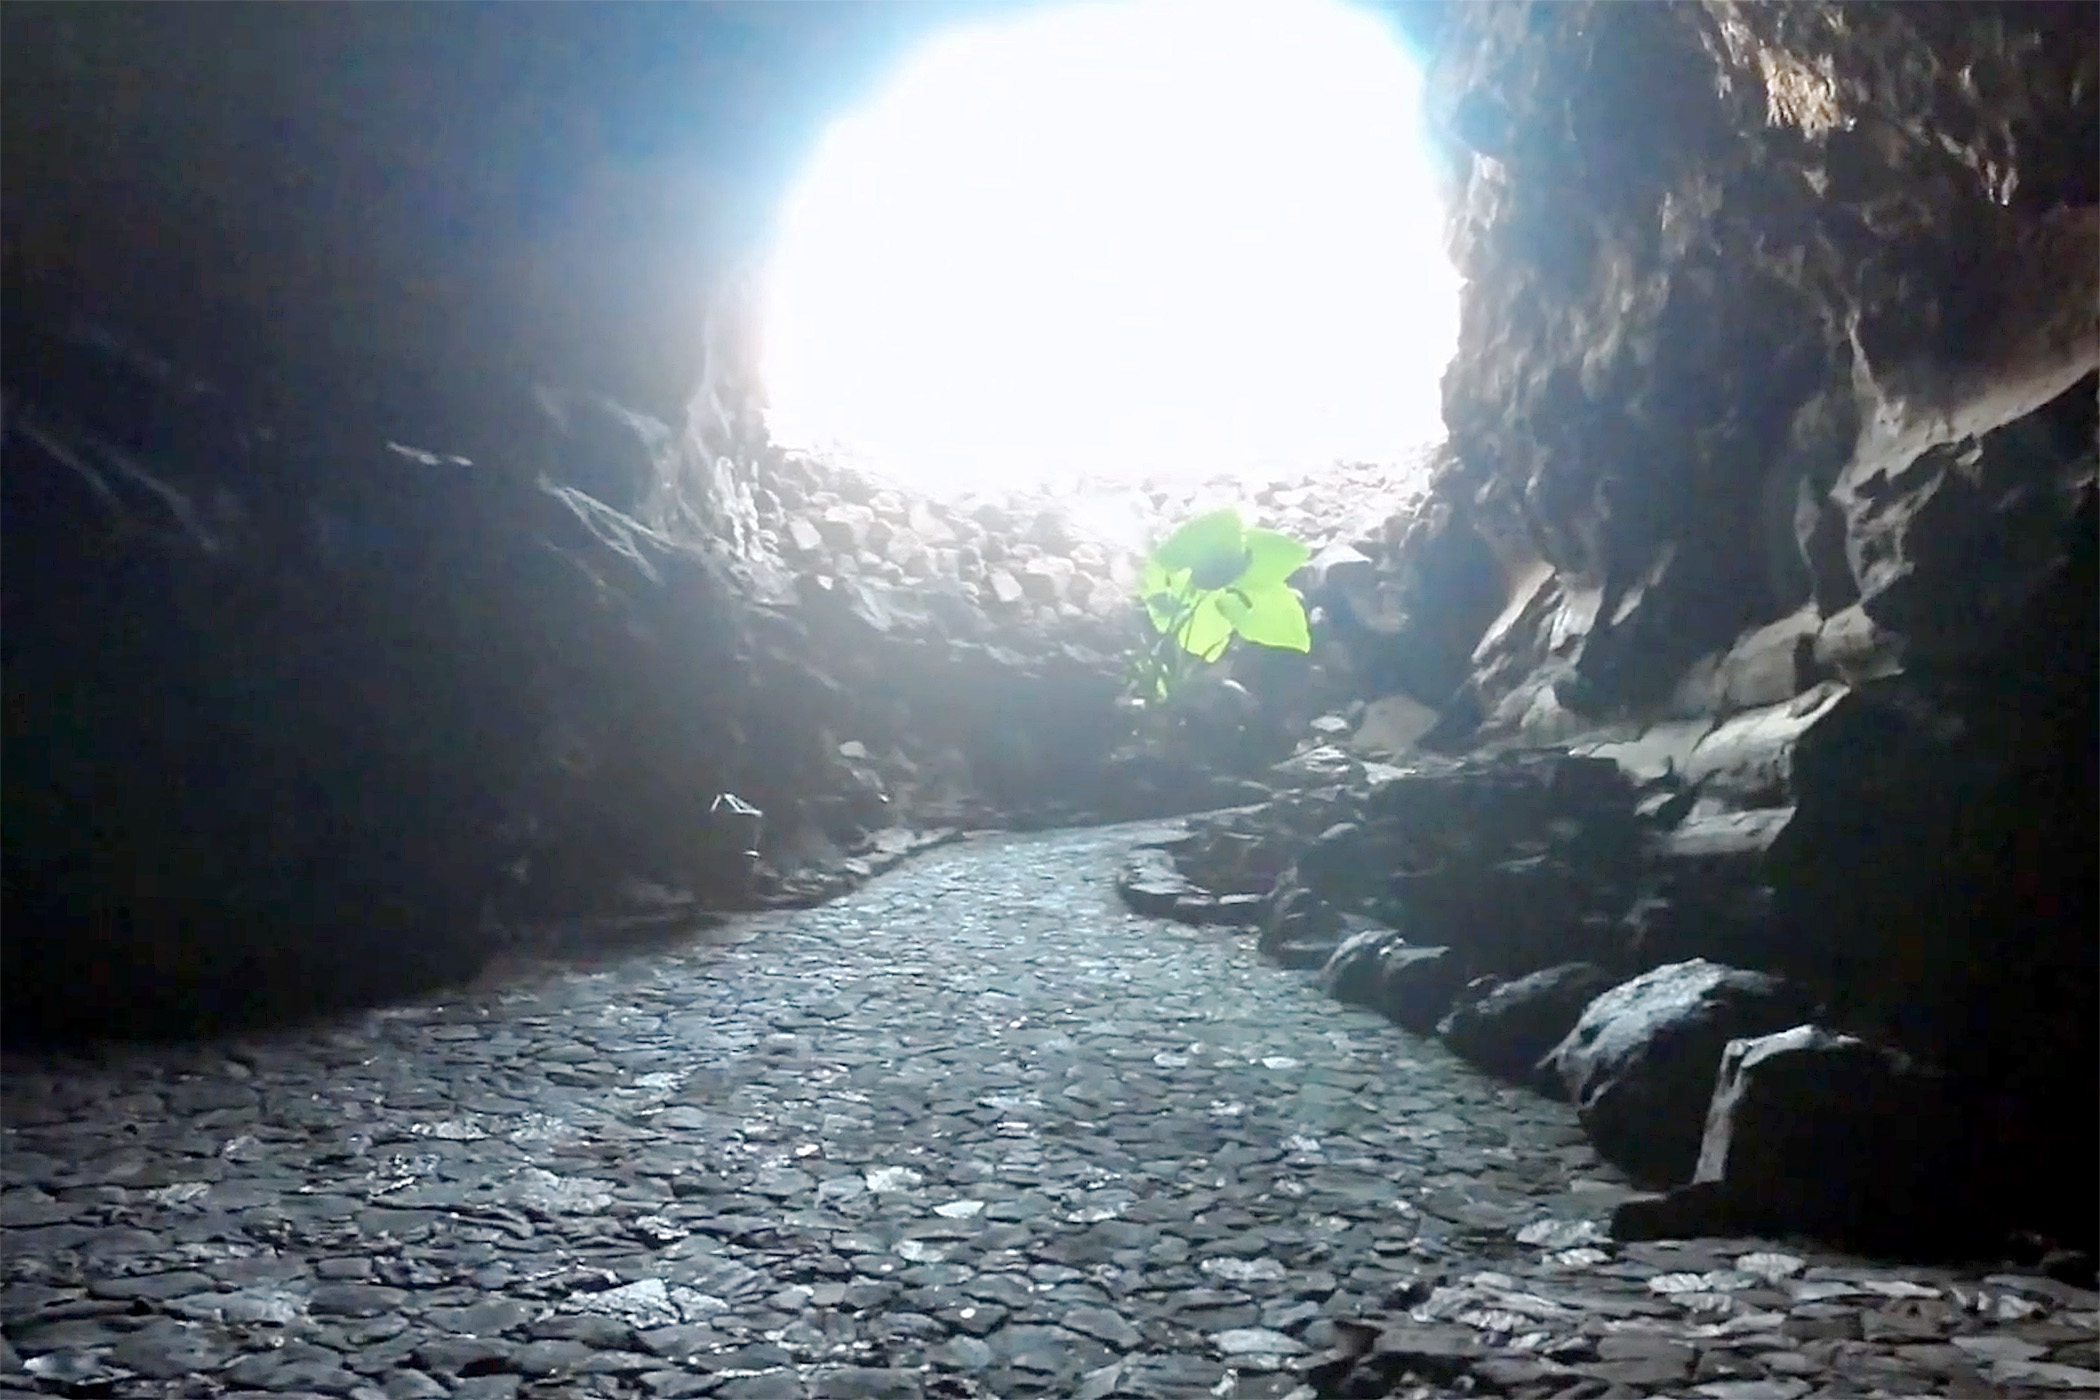 Cueva de los Verdes cave exit